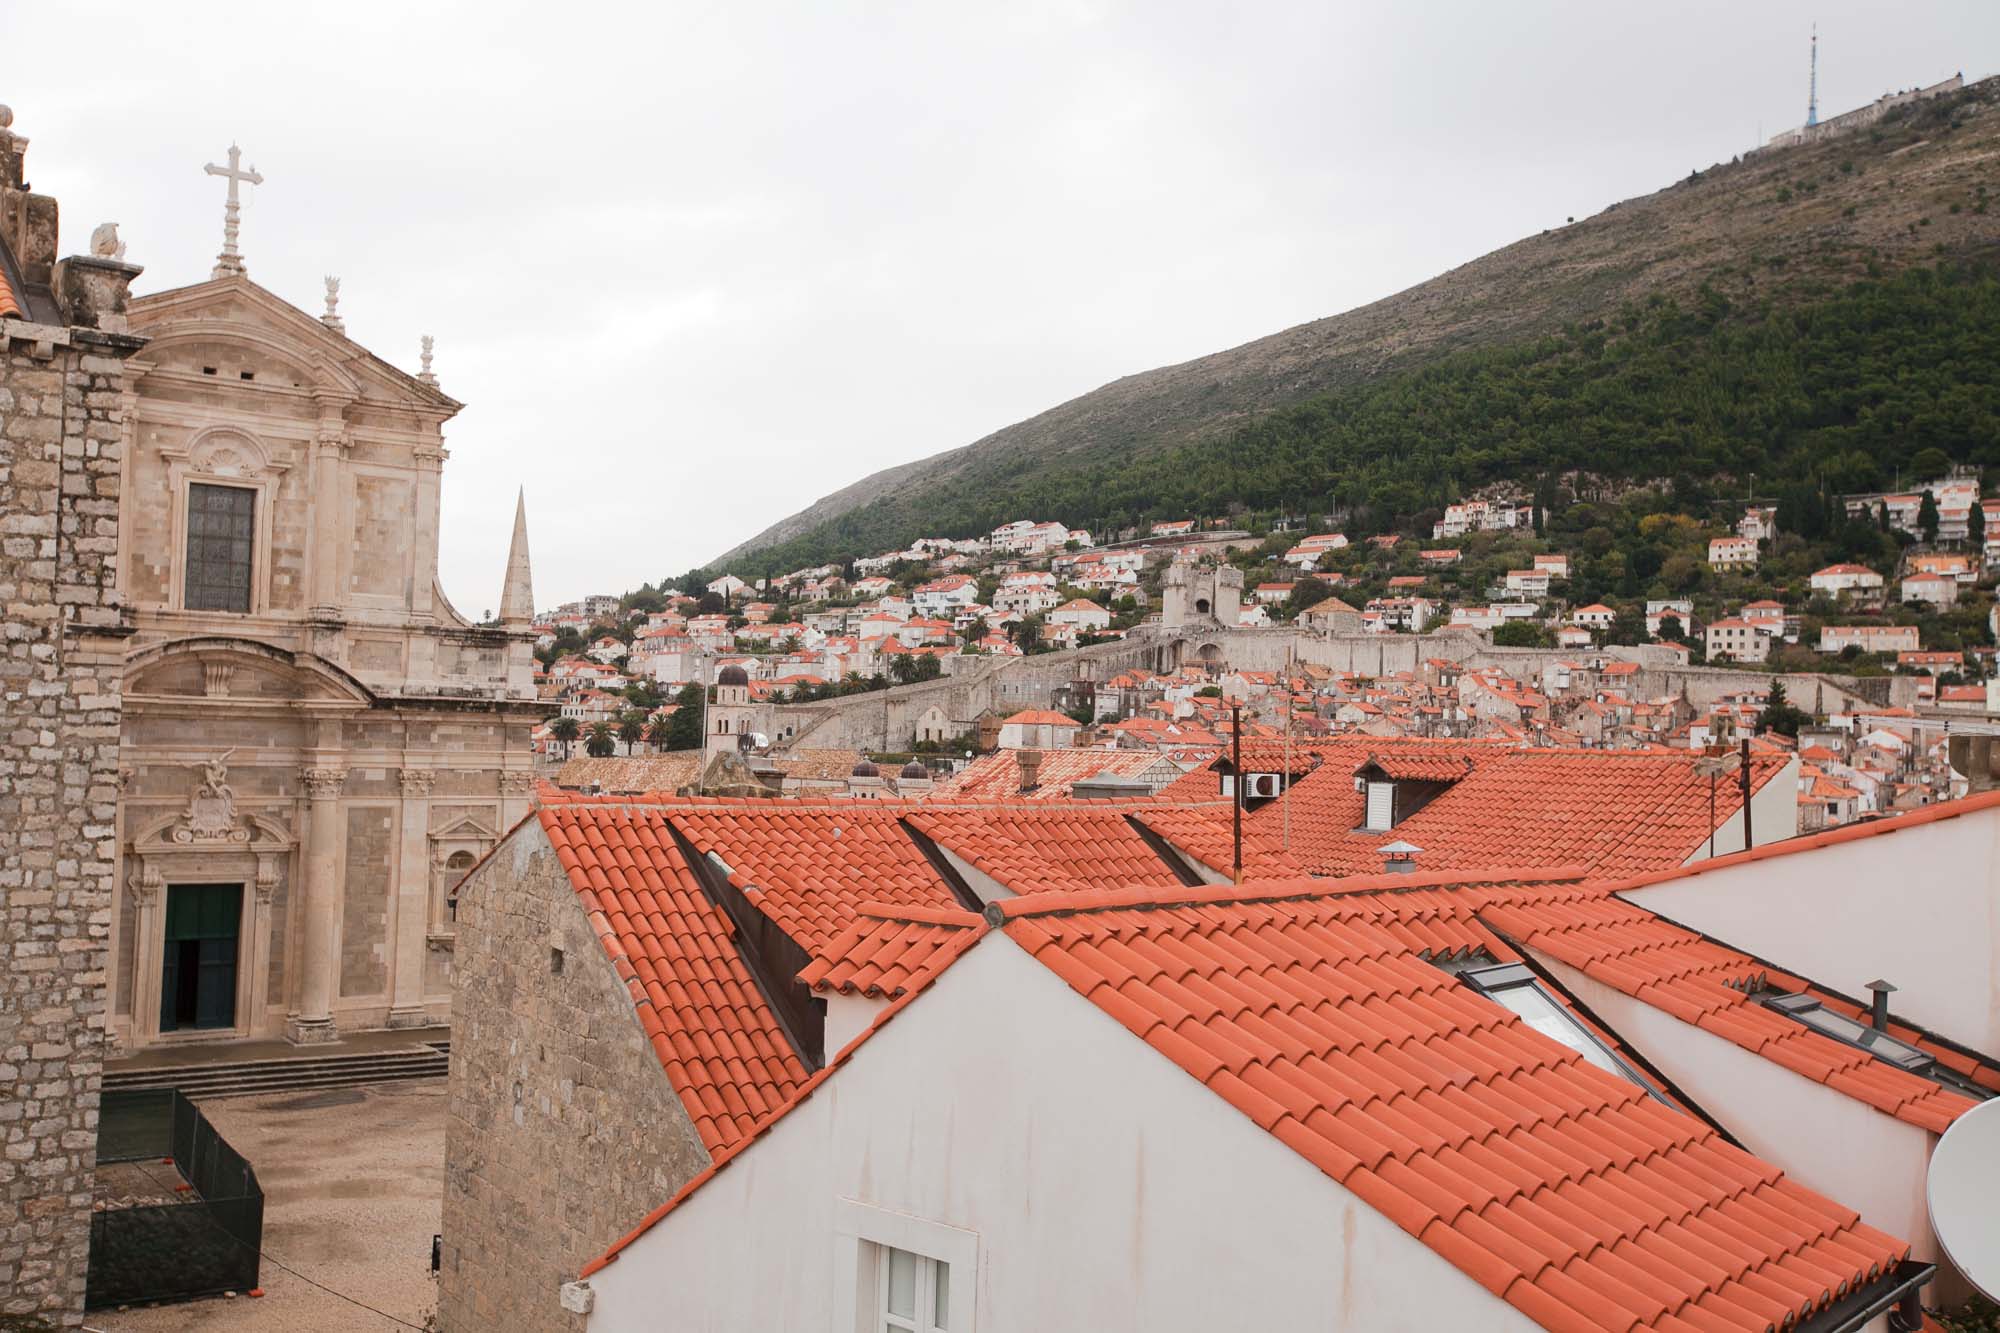 Dubrovnik cityscape